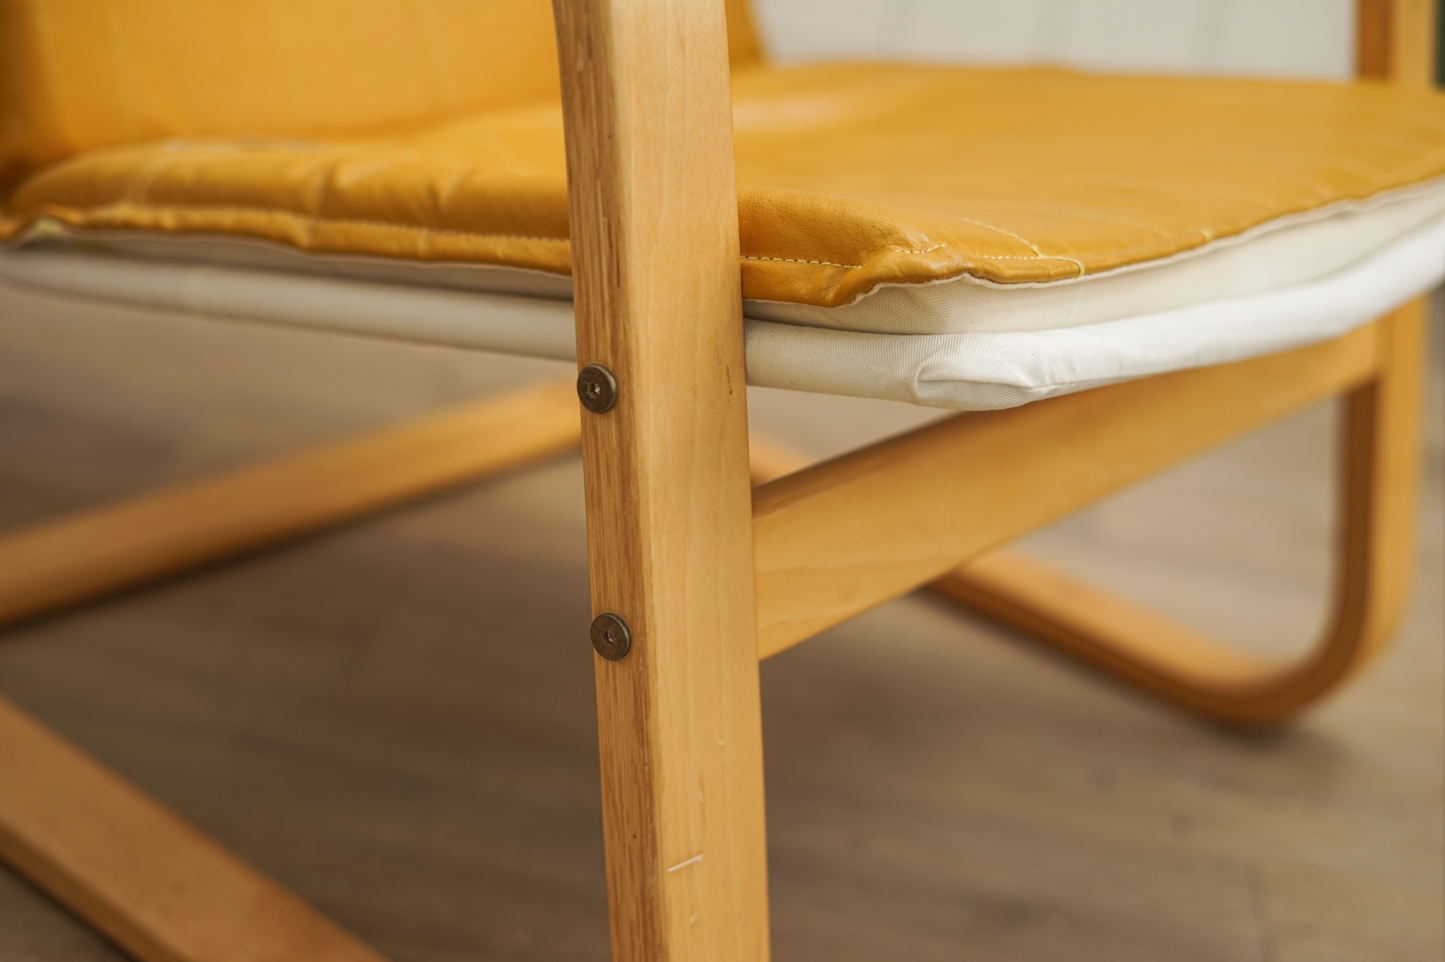 丹麥 黃色 皮革 休閒 扶手椅